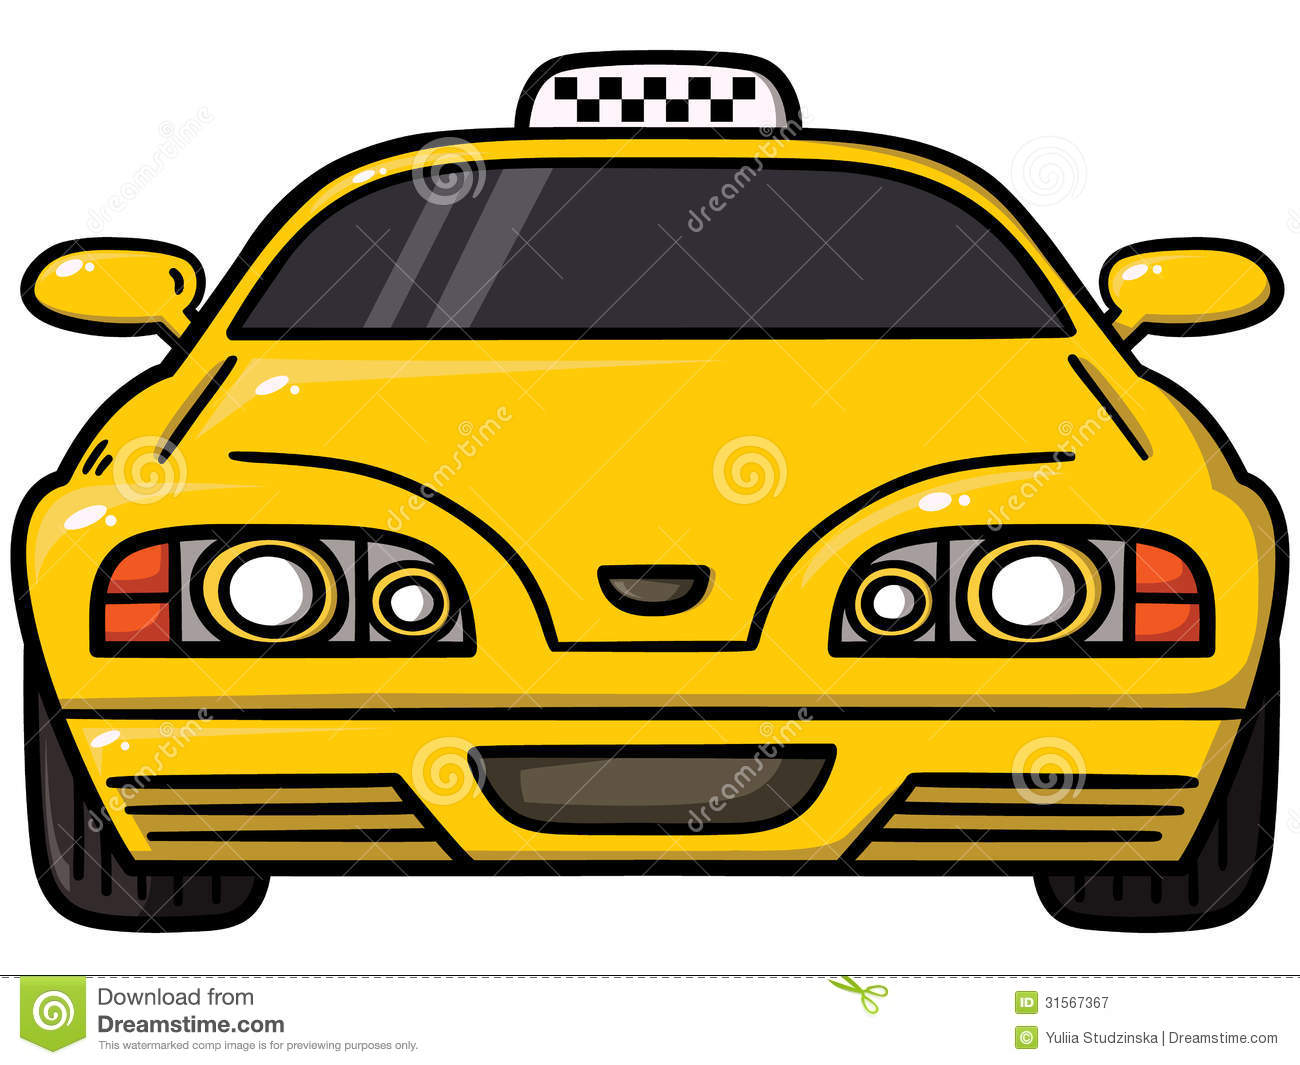 Pasadena Yellow Cab